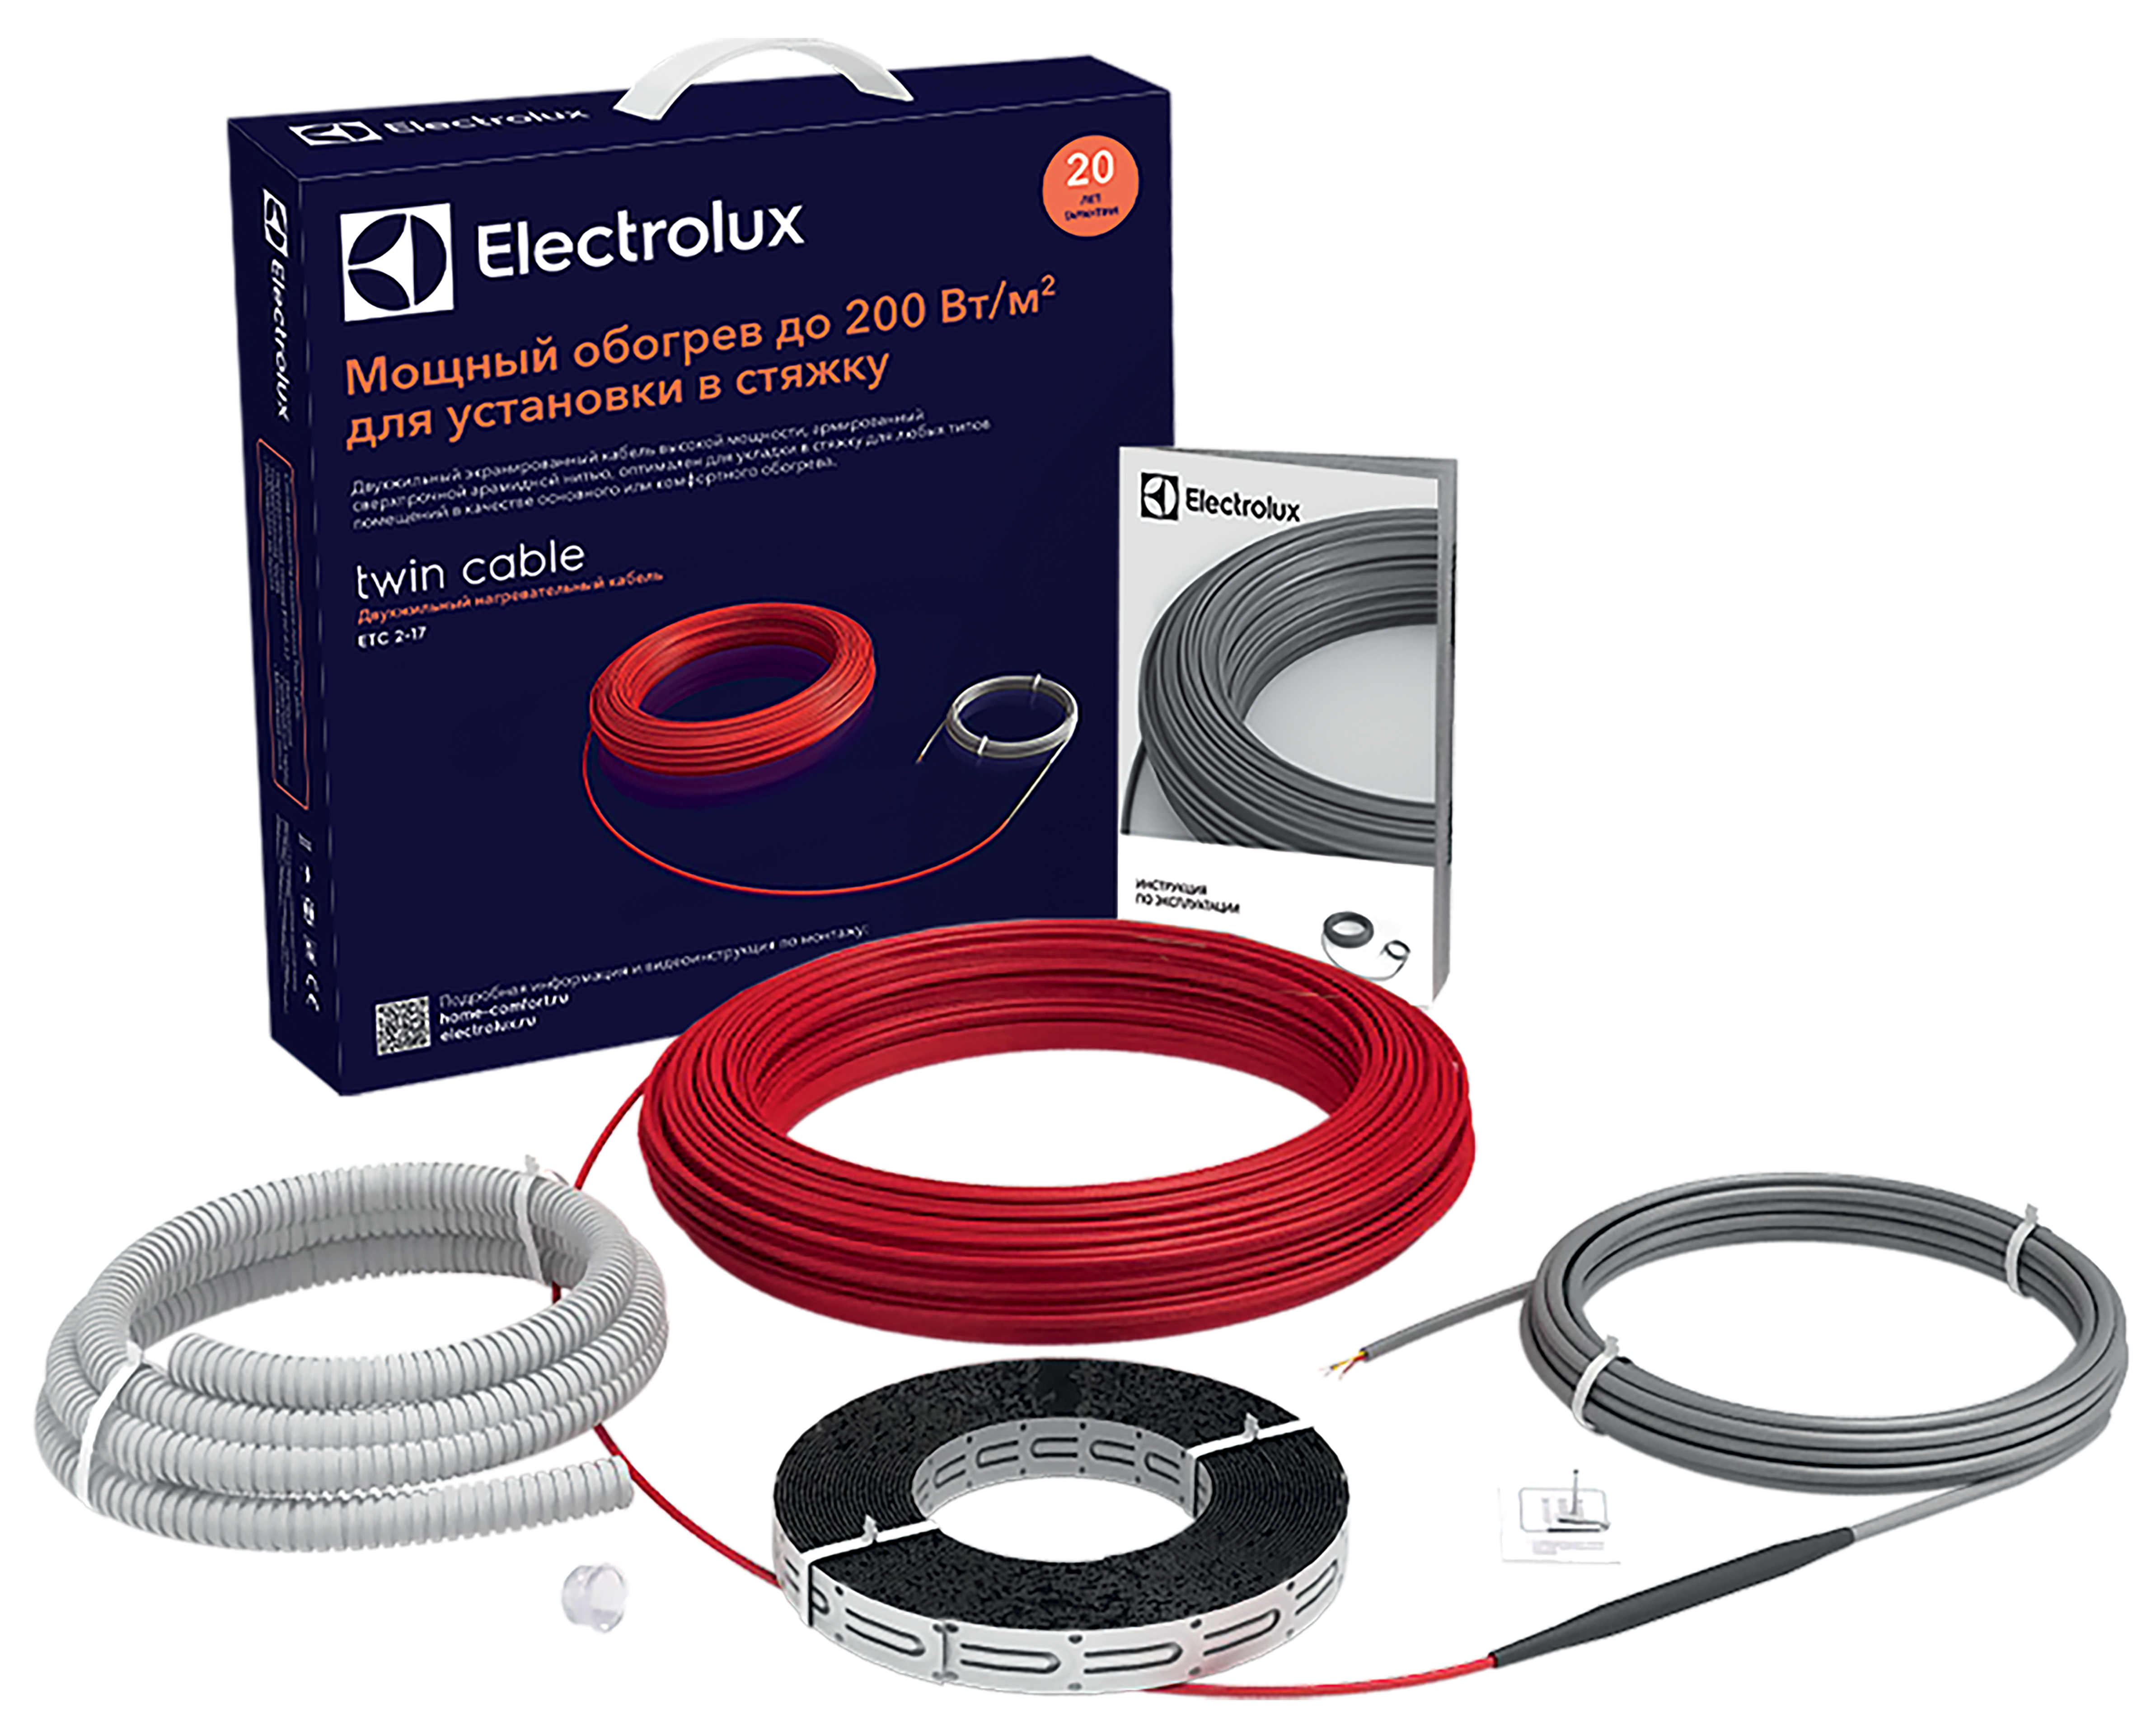 Отзывы кабель electrolux для теплого пола Electrolux Twin Cable ETC 2-17-200 в Украине